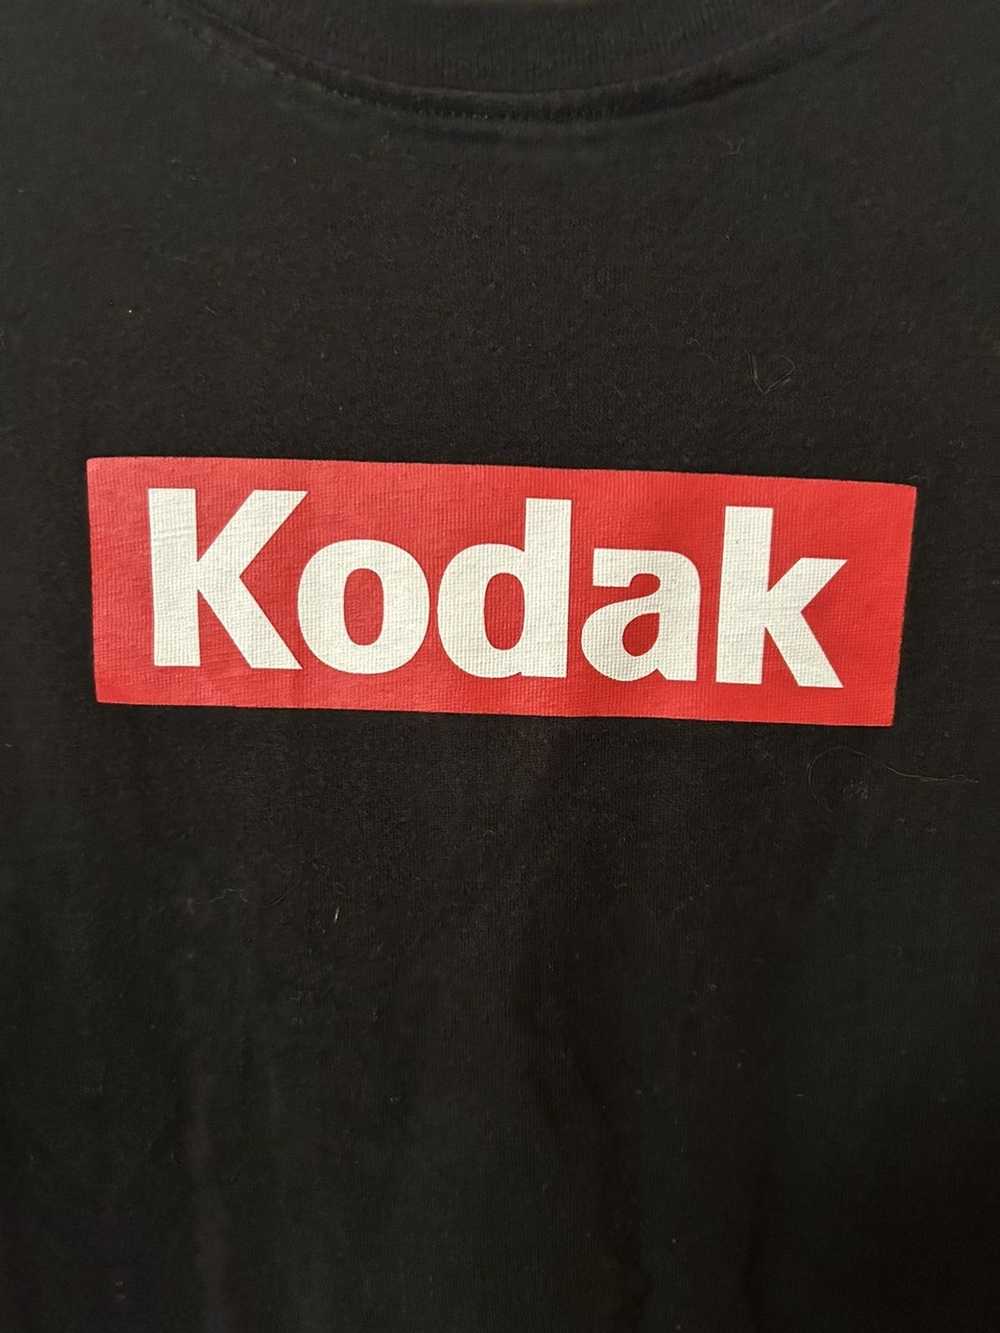 Kodak Vintage Very Rare Kodak Camera Shirt - image 2